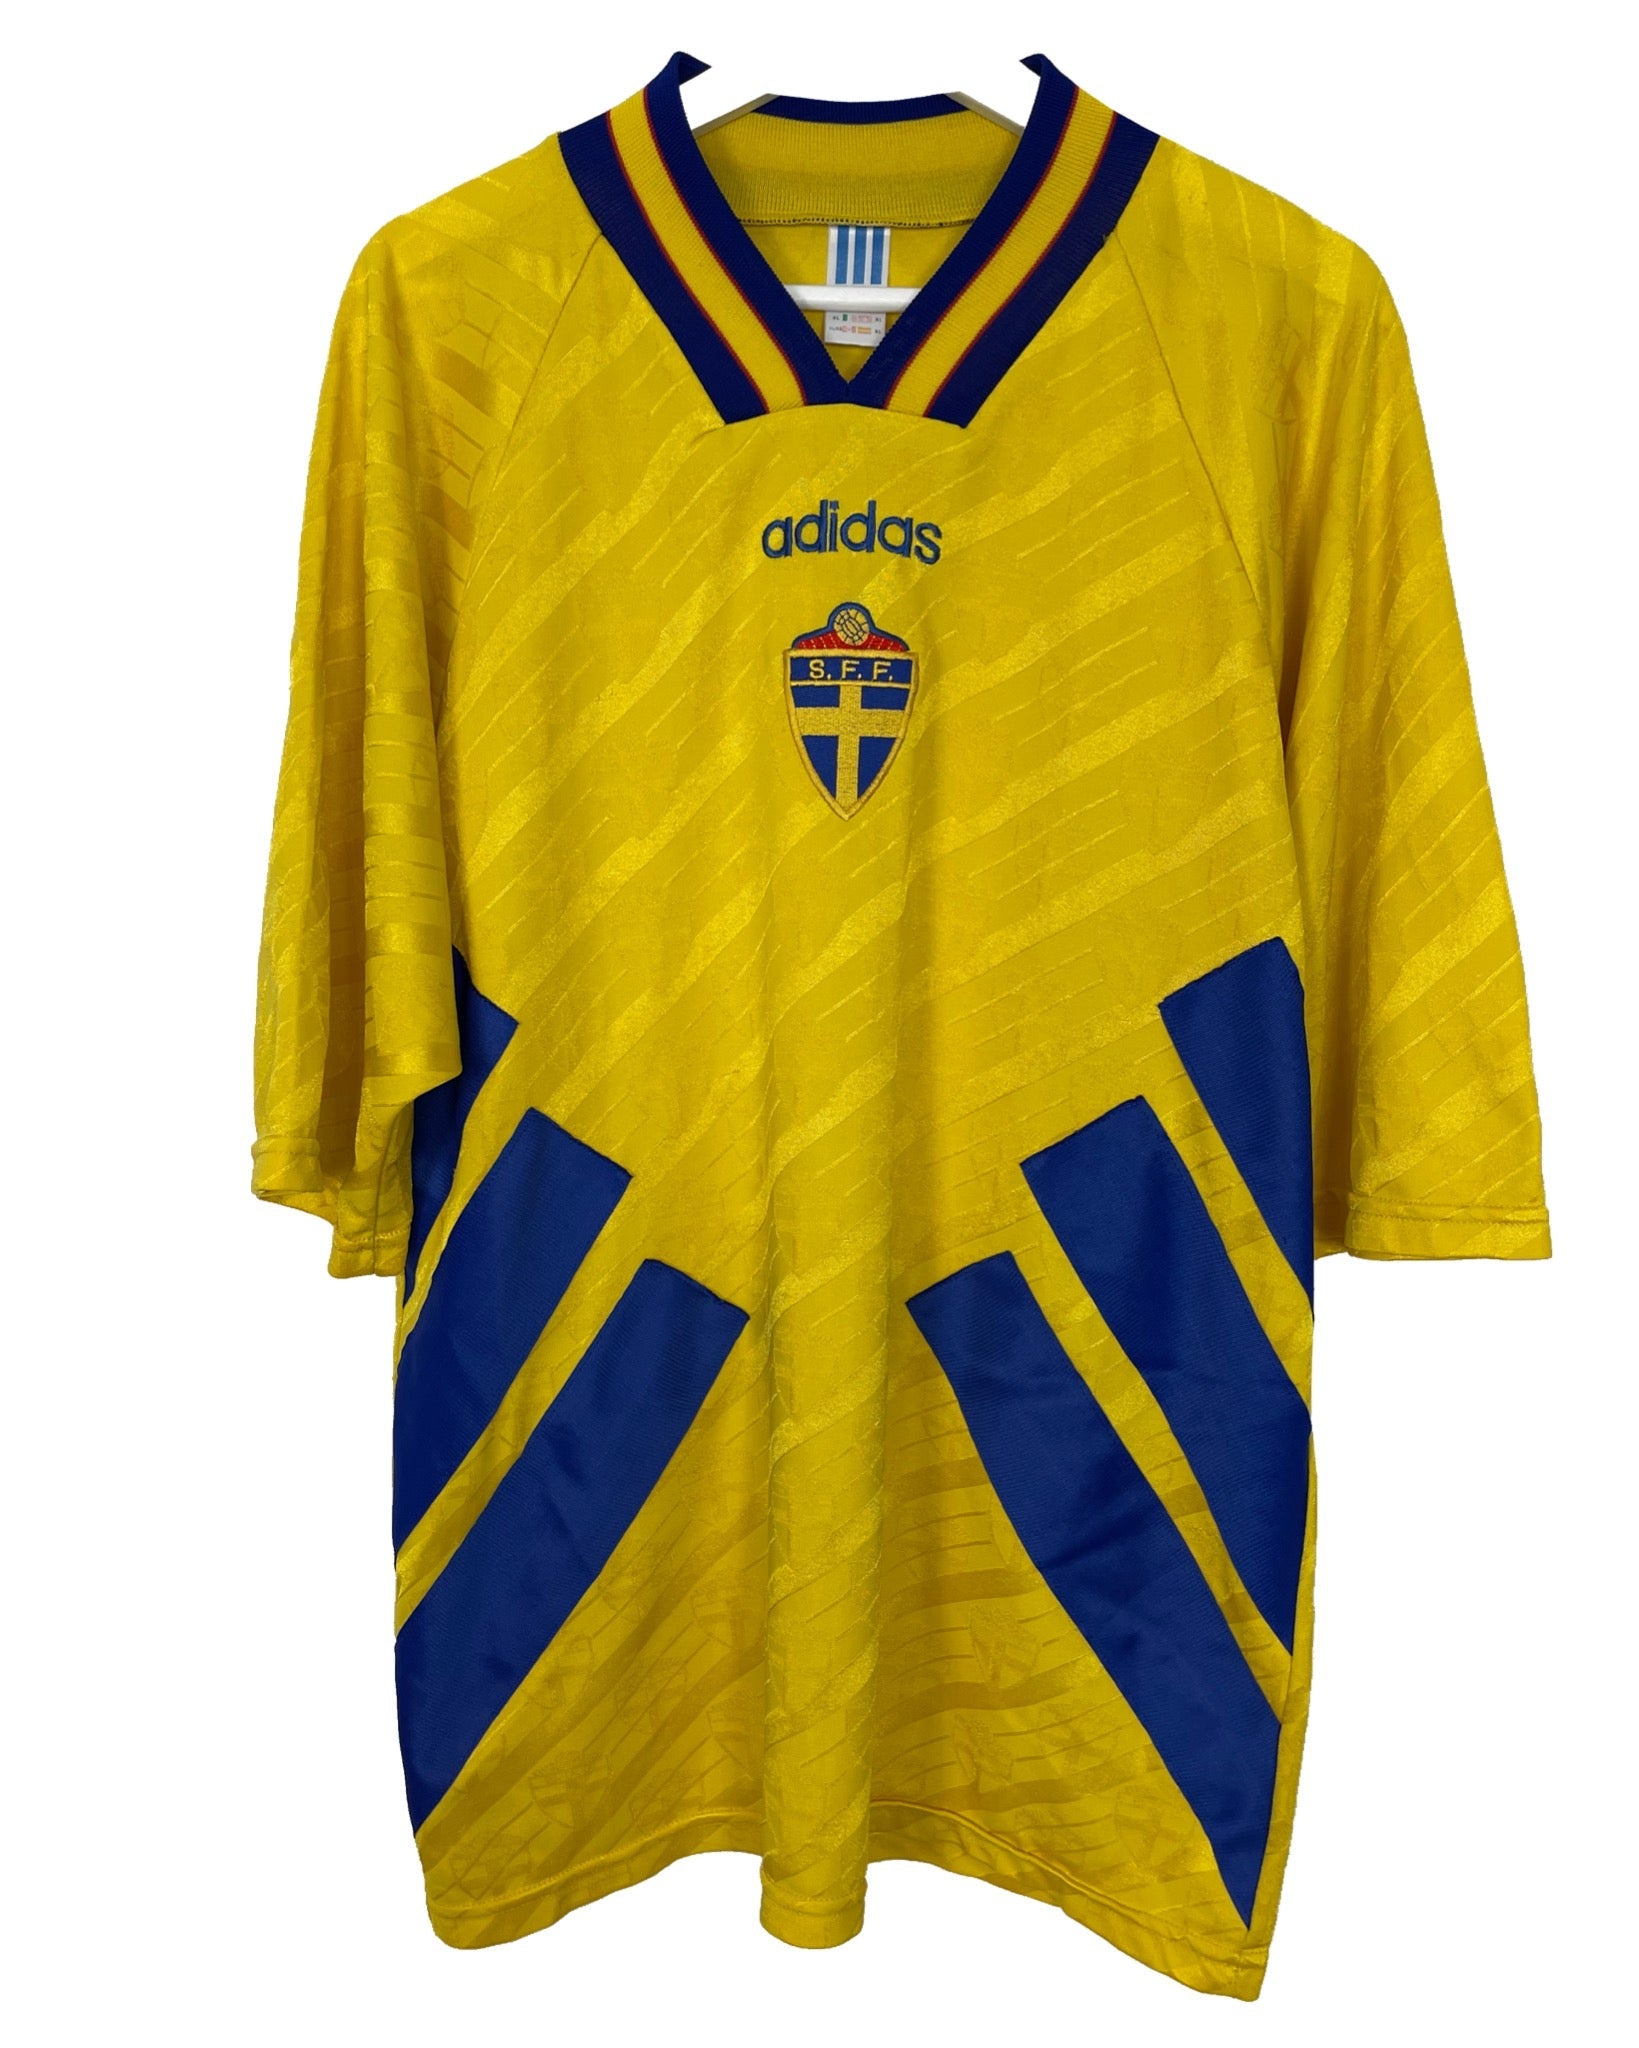  Maillot de football Adidas Maillot de football - Suède 94' 96'  - XL - PLOMOSTORE